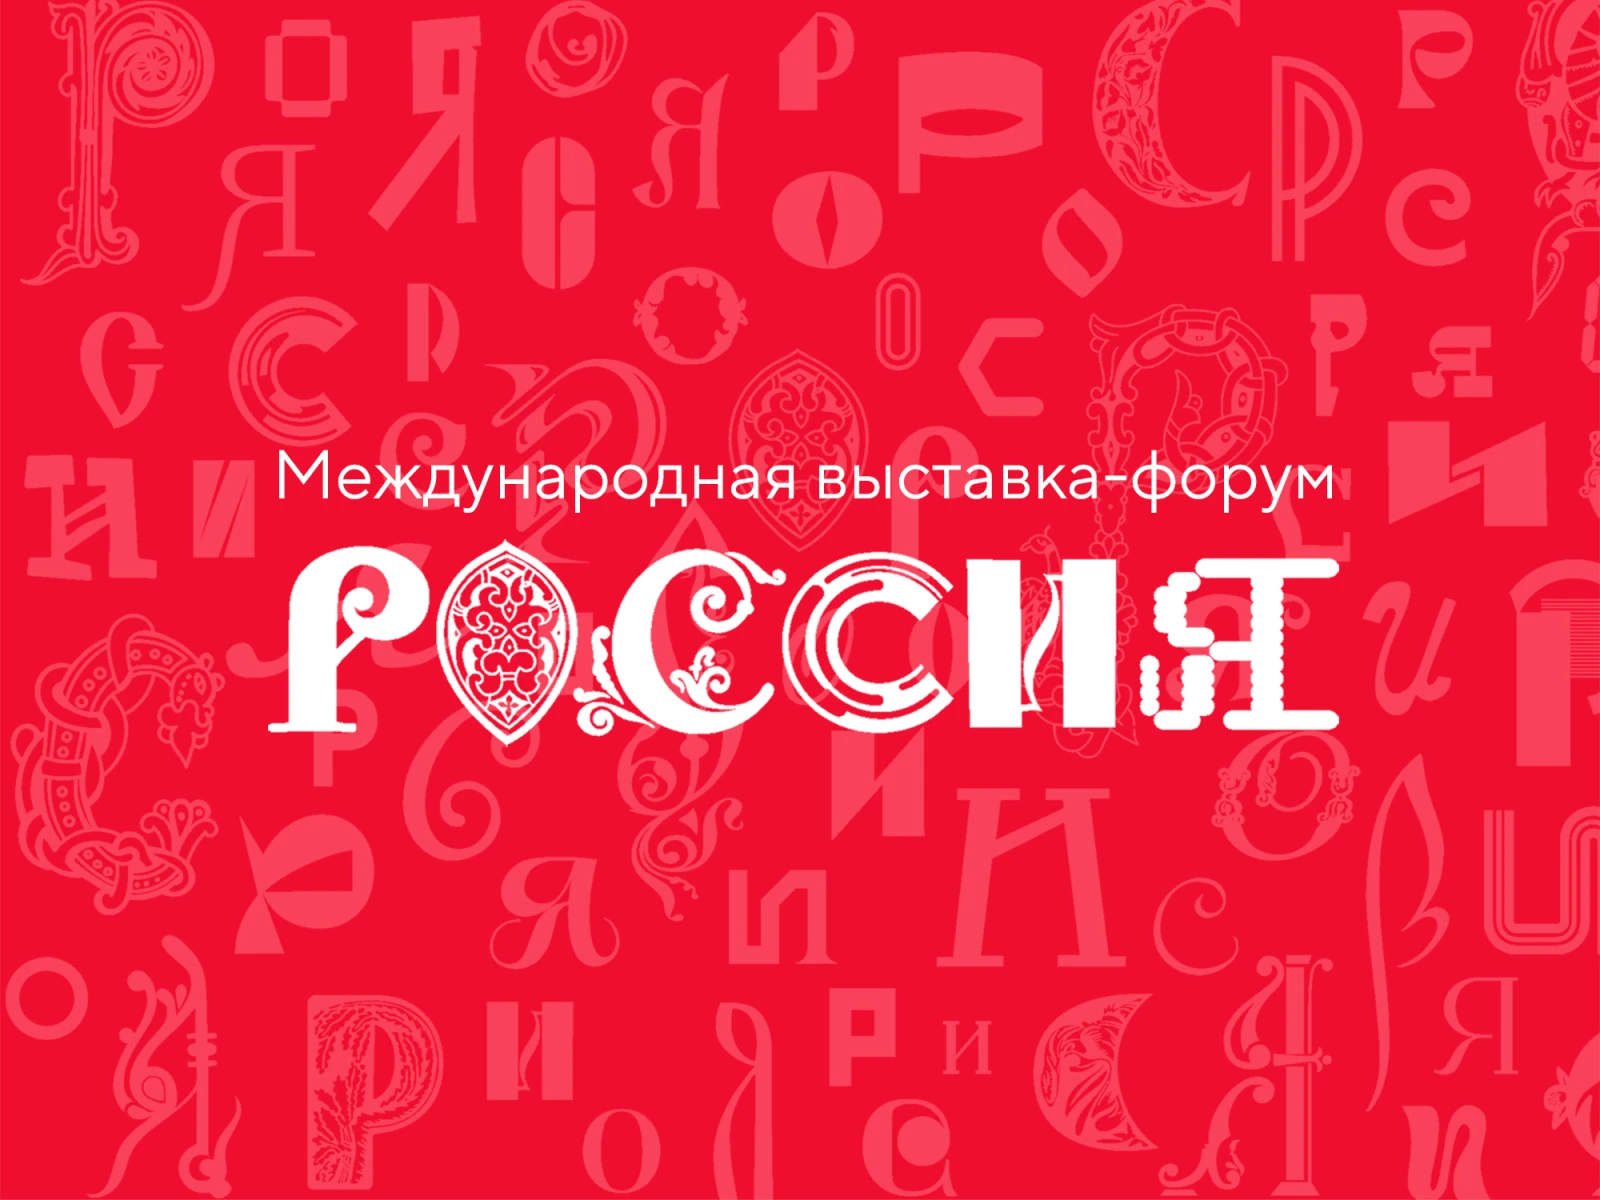 Каждый житель страны может принять участие в создании логотипа выставки "Россия" для своего региона